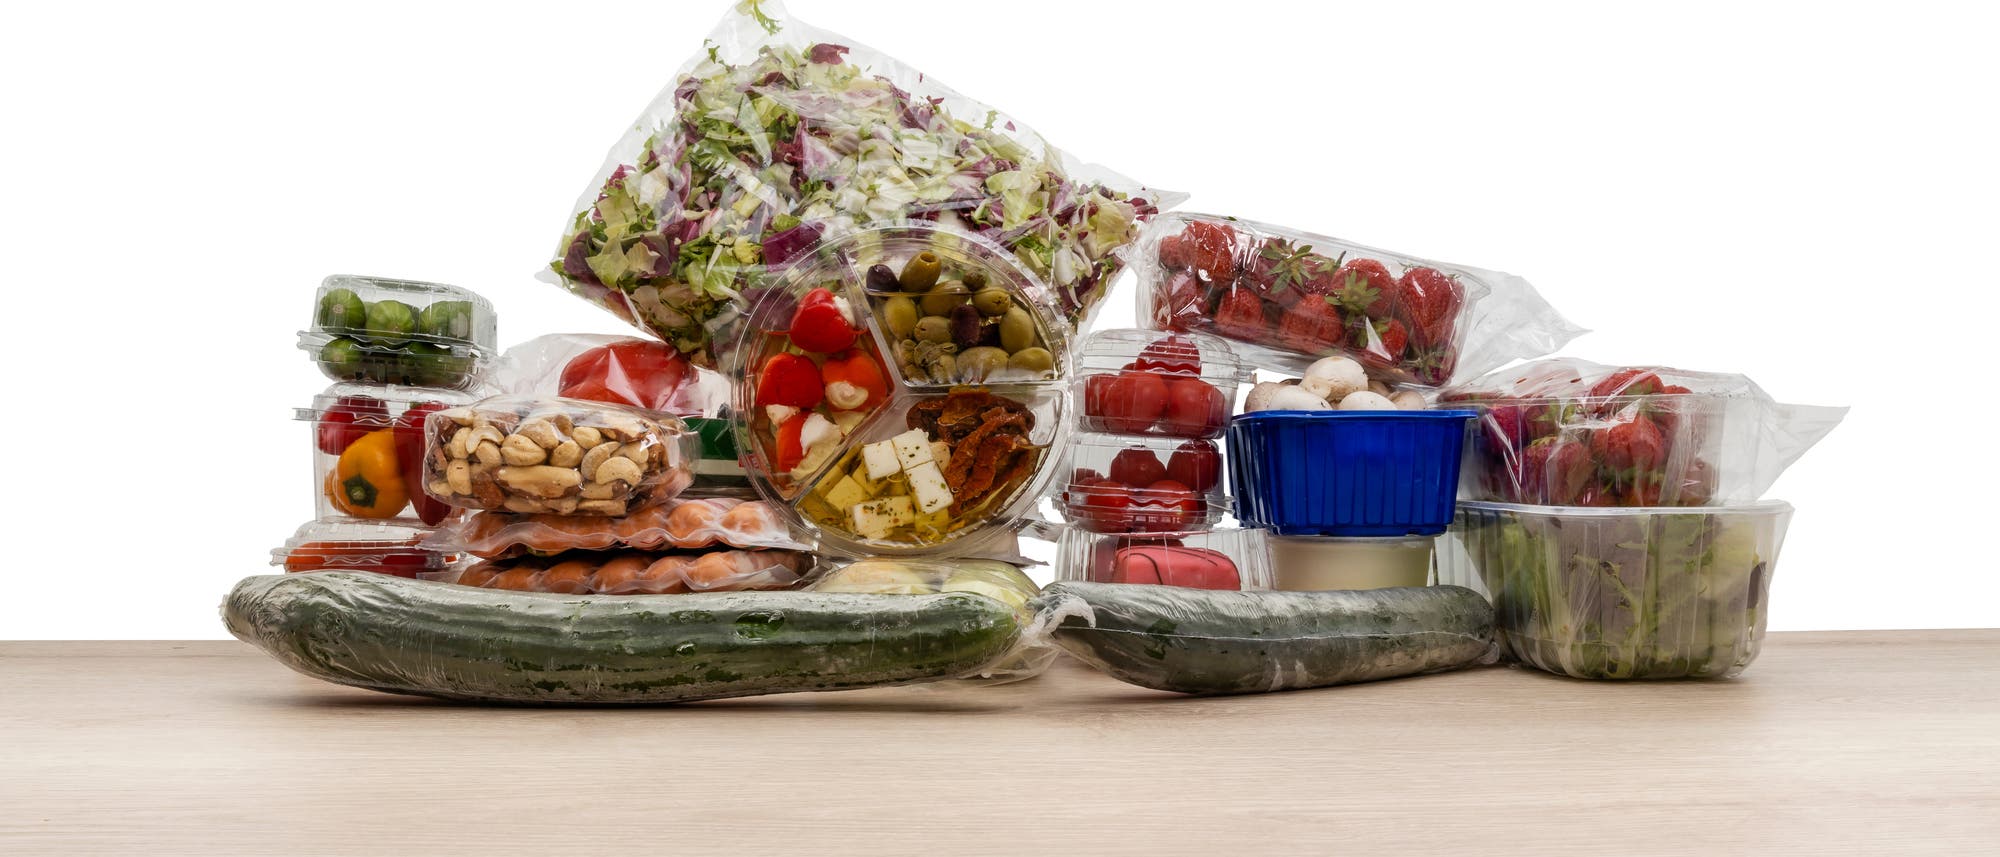 Verschiedene Gemüse- und Obstsorten sind in transparente Plastikverpackungen verpackt